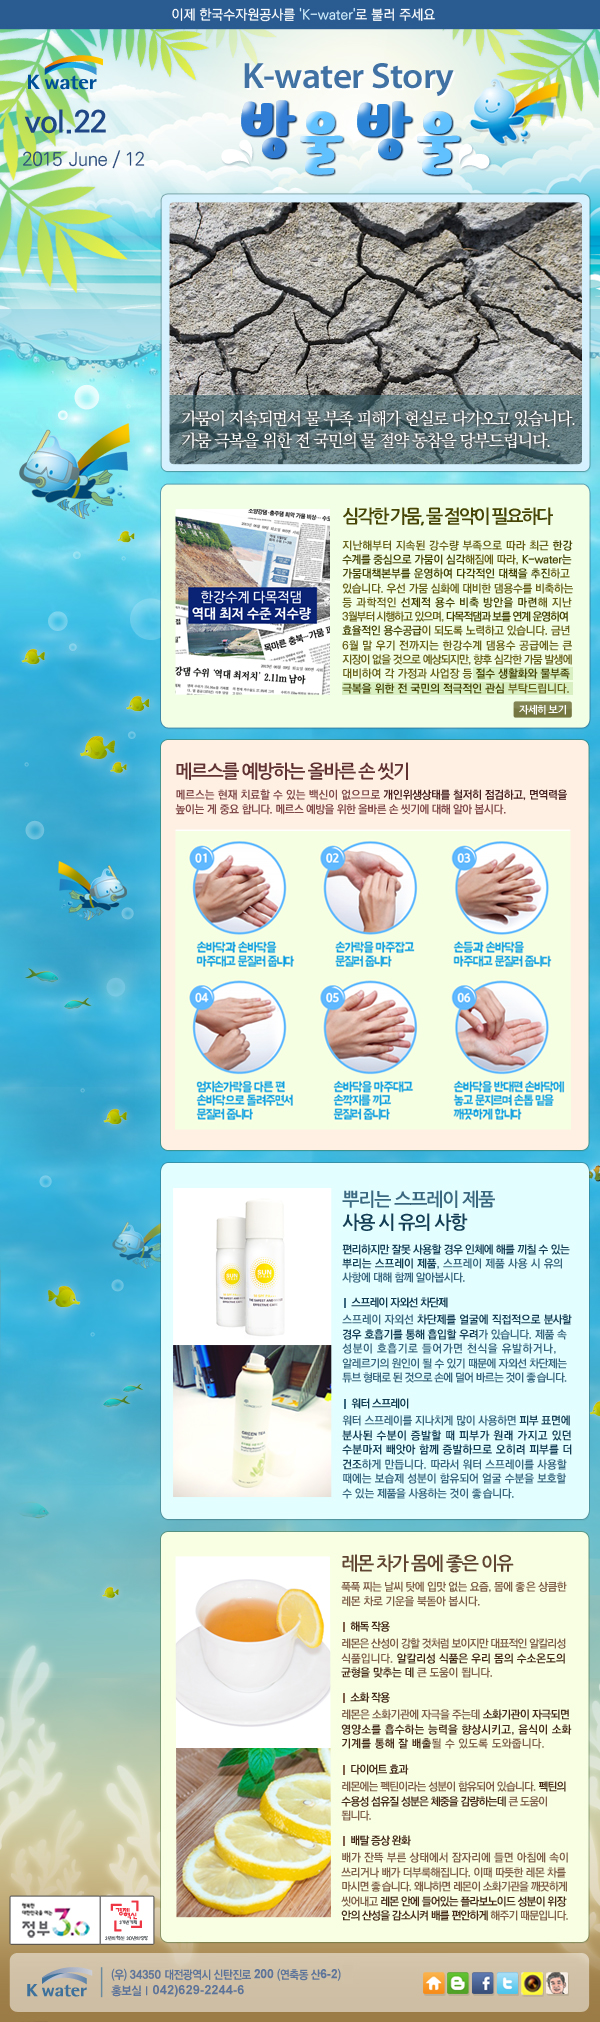 K-water 뉴스레터 2015년 22호